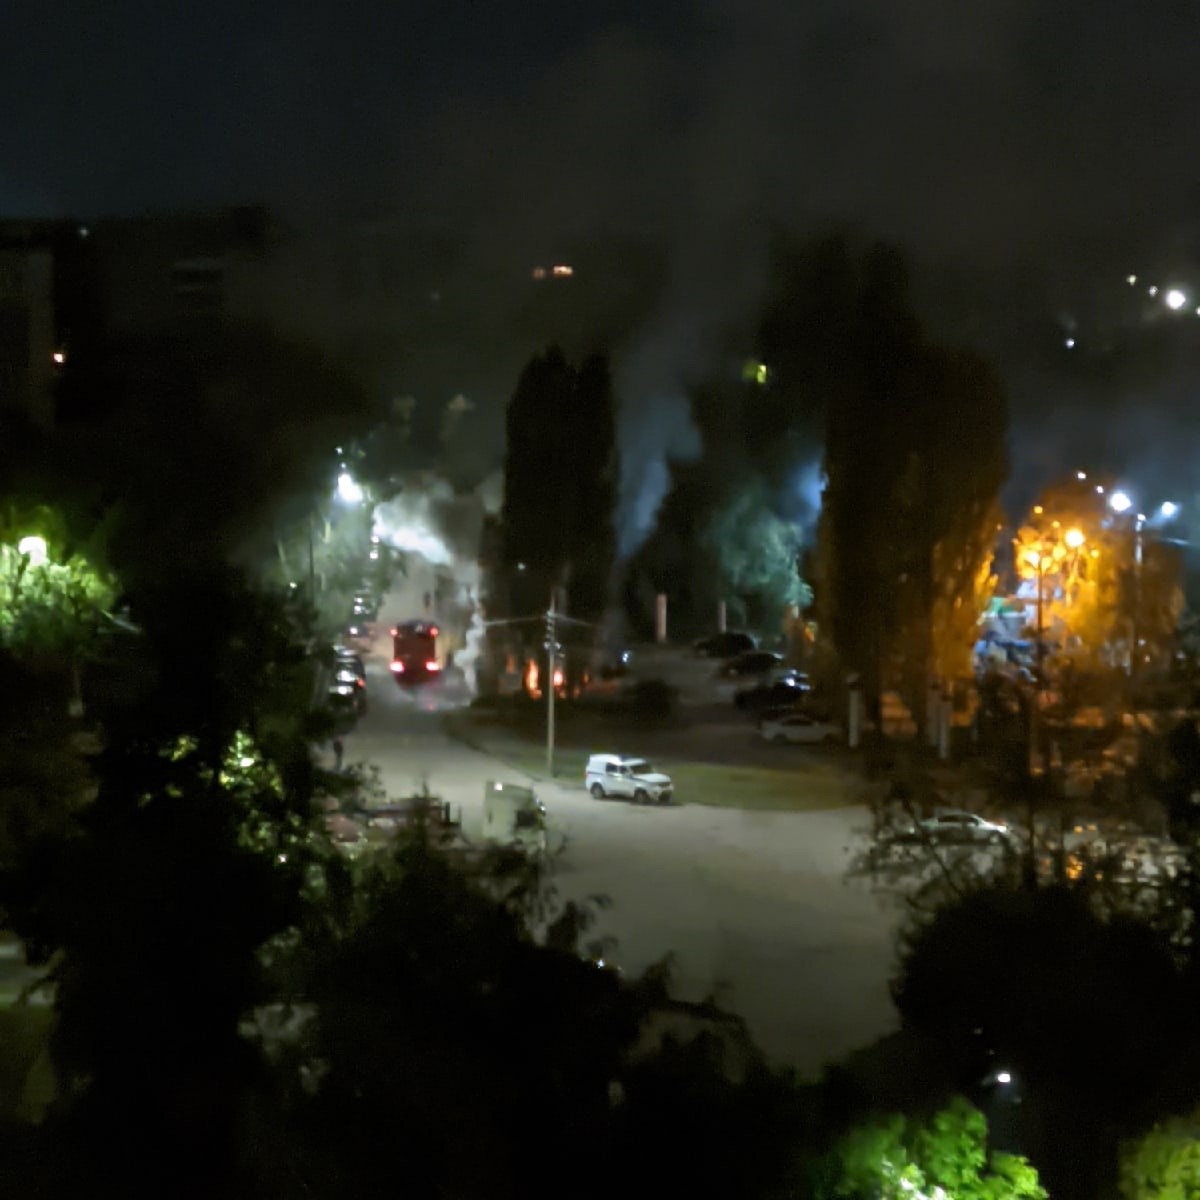 Автомобиль Infinity загорелся ночью около парка 777-летия Нижнего Новгорода в Автозаводском районе